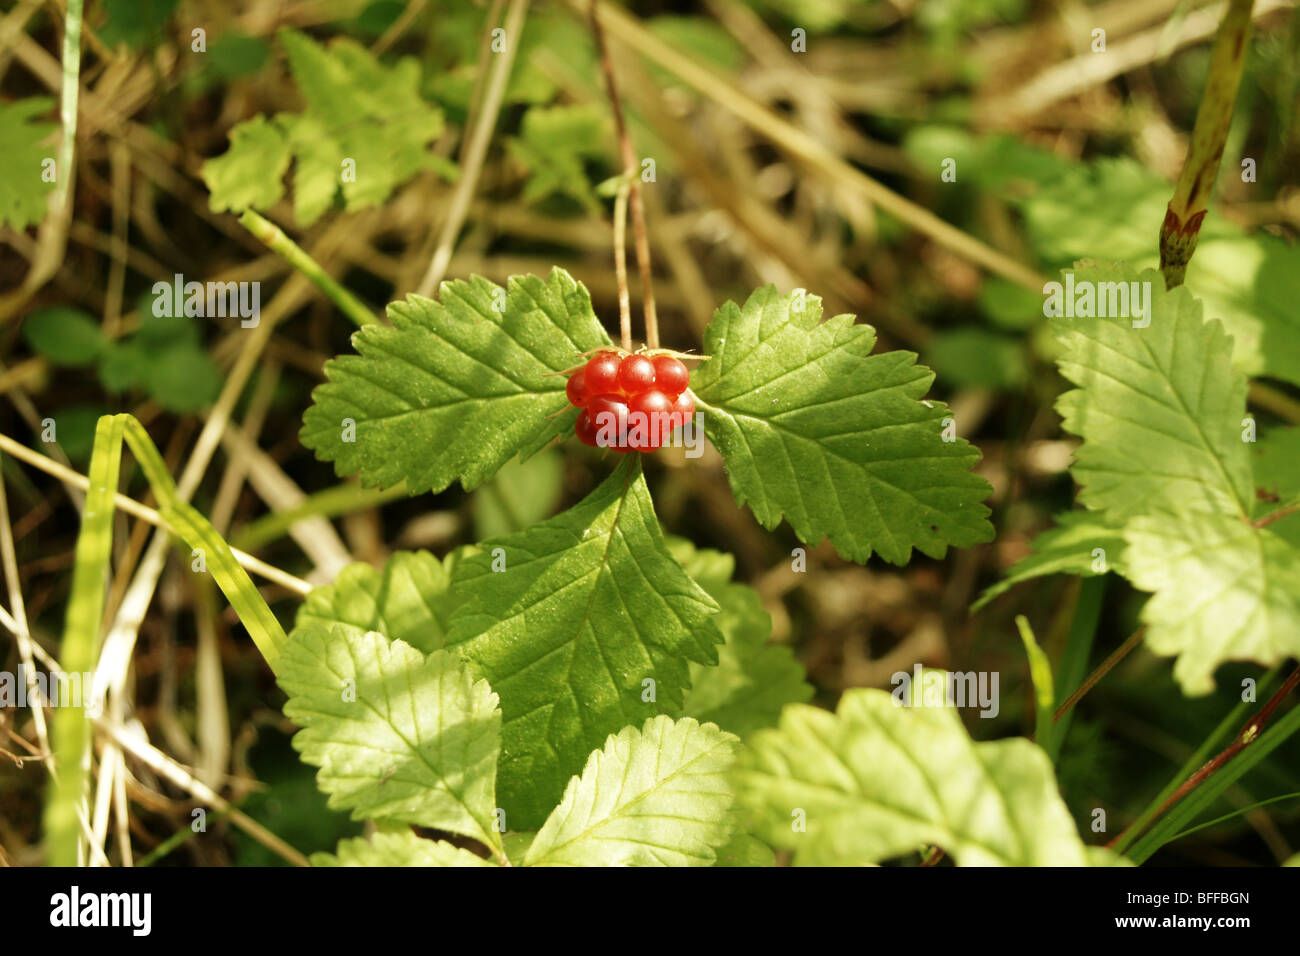 Rubus arcticus. Stock Photo